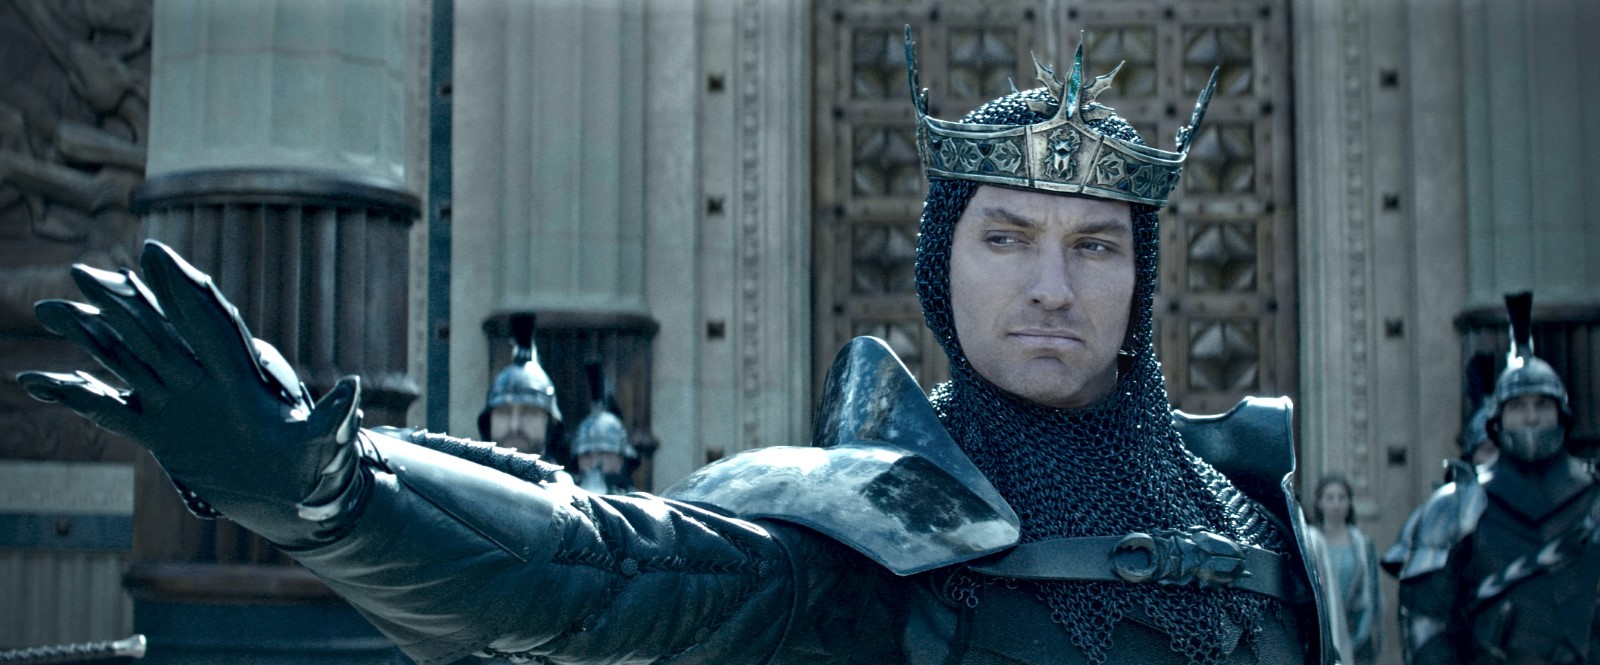 King Arthur: Legend Of The Sword Film Watch Hd Online 2017